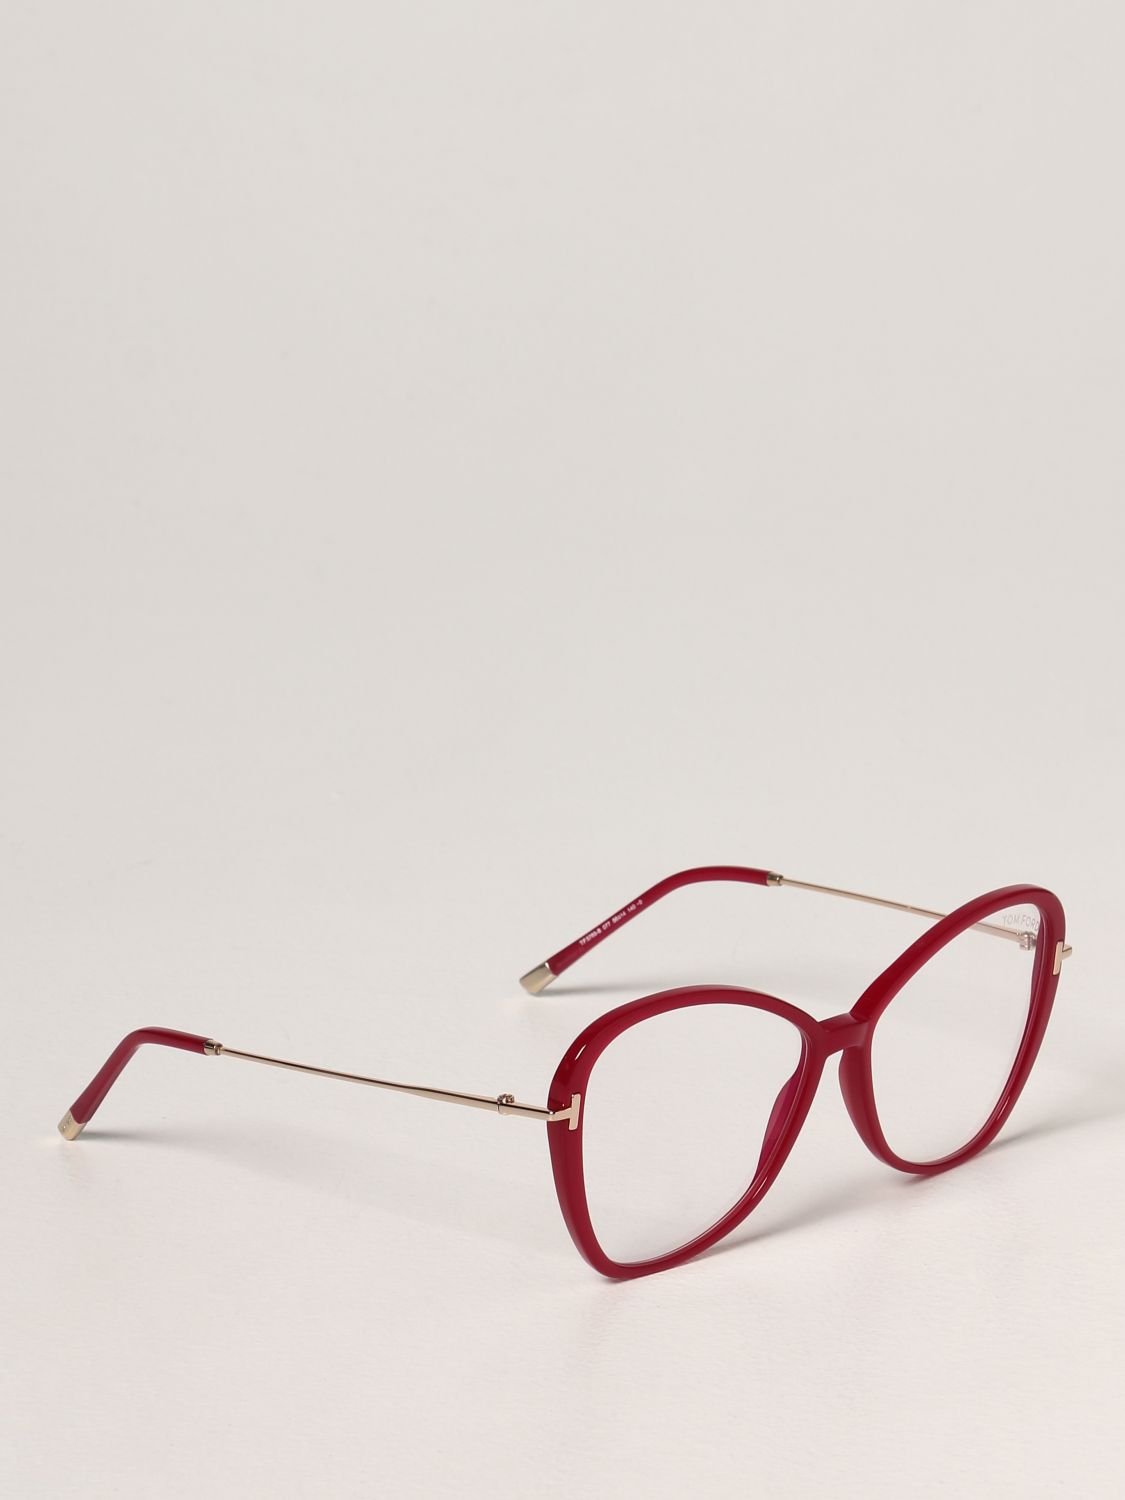 Gafas Tom Ford: Gafas mujer Tom Ford rojo 1